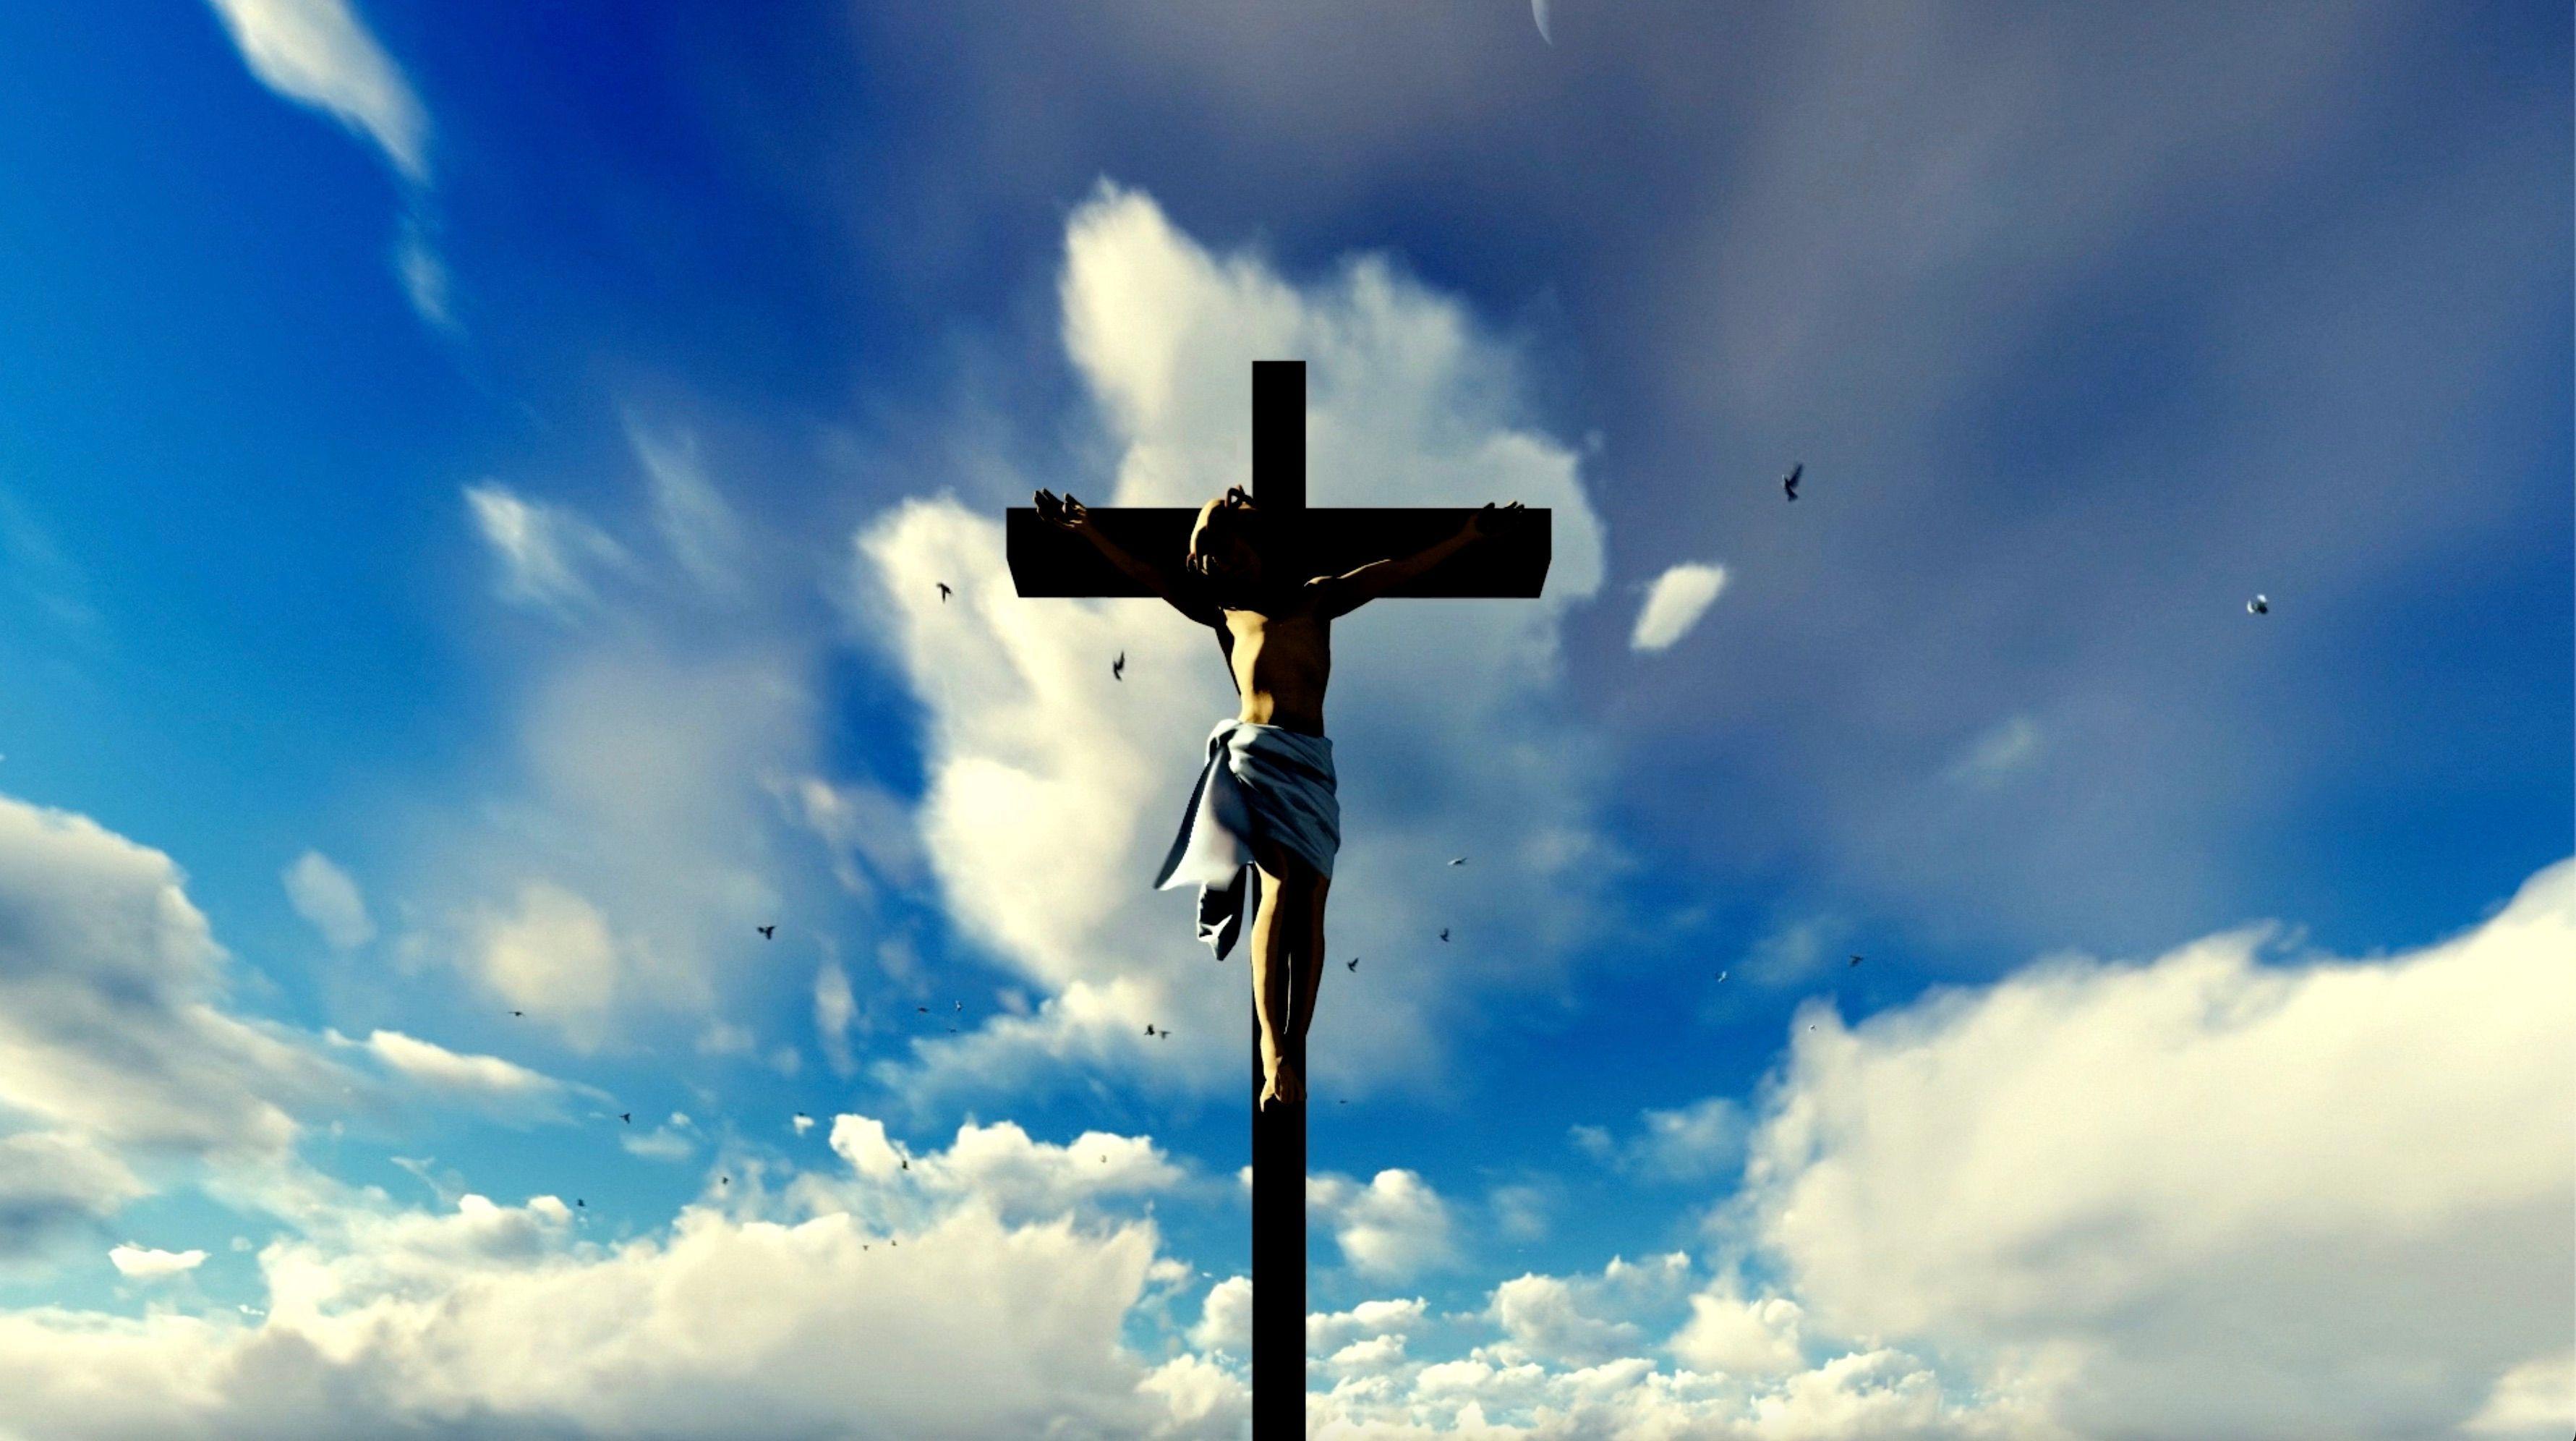 يسوع المسيح صلب على الصليب والسحب خلفه